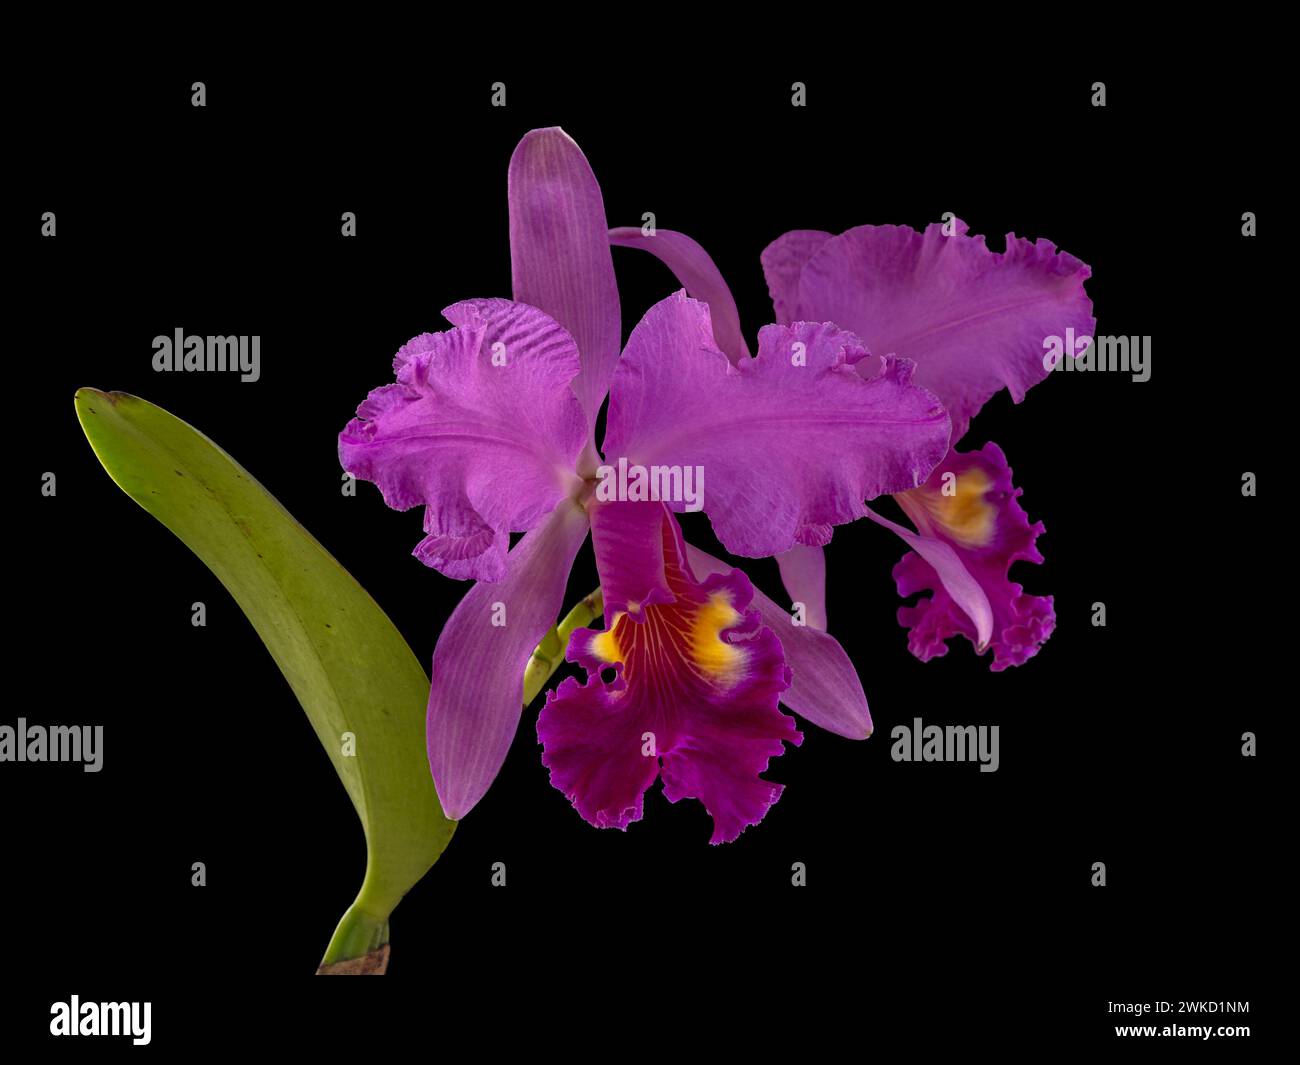 Vue rapprochée de spectaculaires fleurs d'orchidée hybride cattleya rose violet vif et jaune doré isolées sur fond noir Banque D'Images